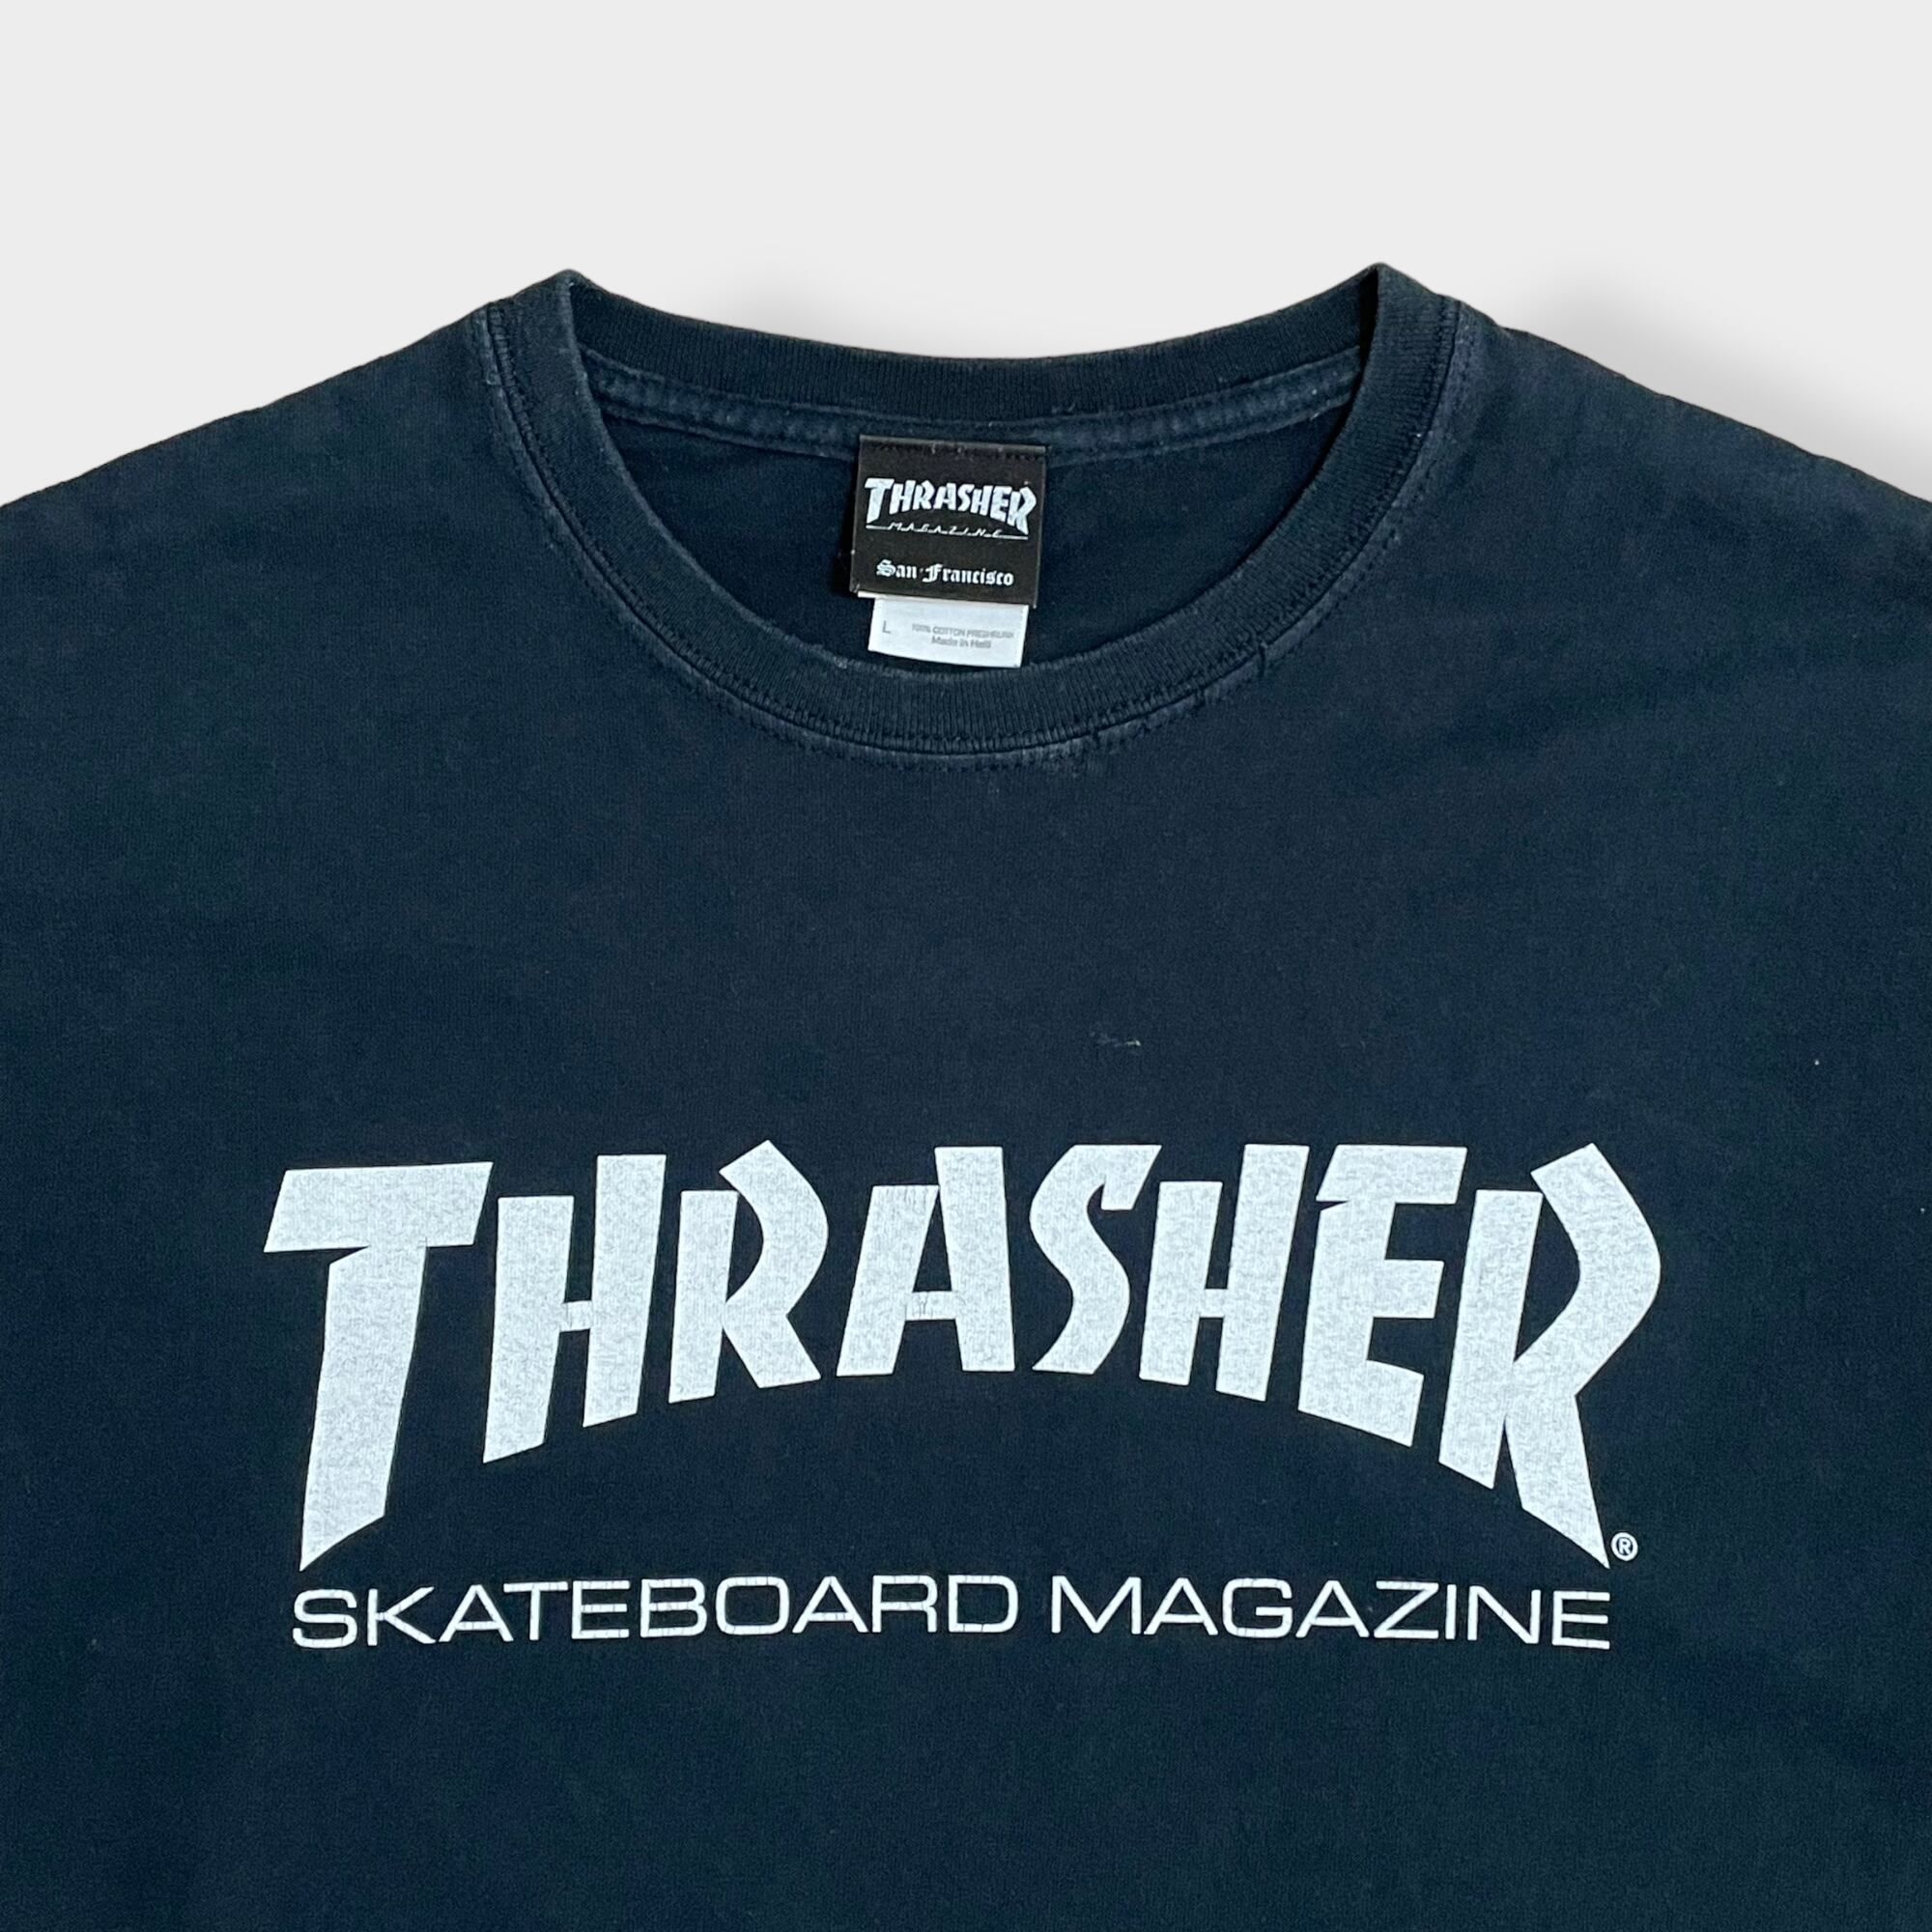 USA企画 Thrasher スラッシャー ロゴ Tシャツ プリント